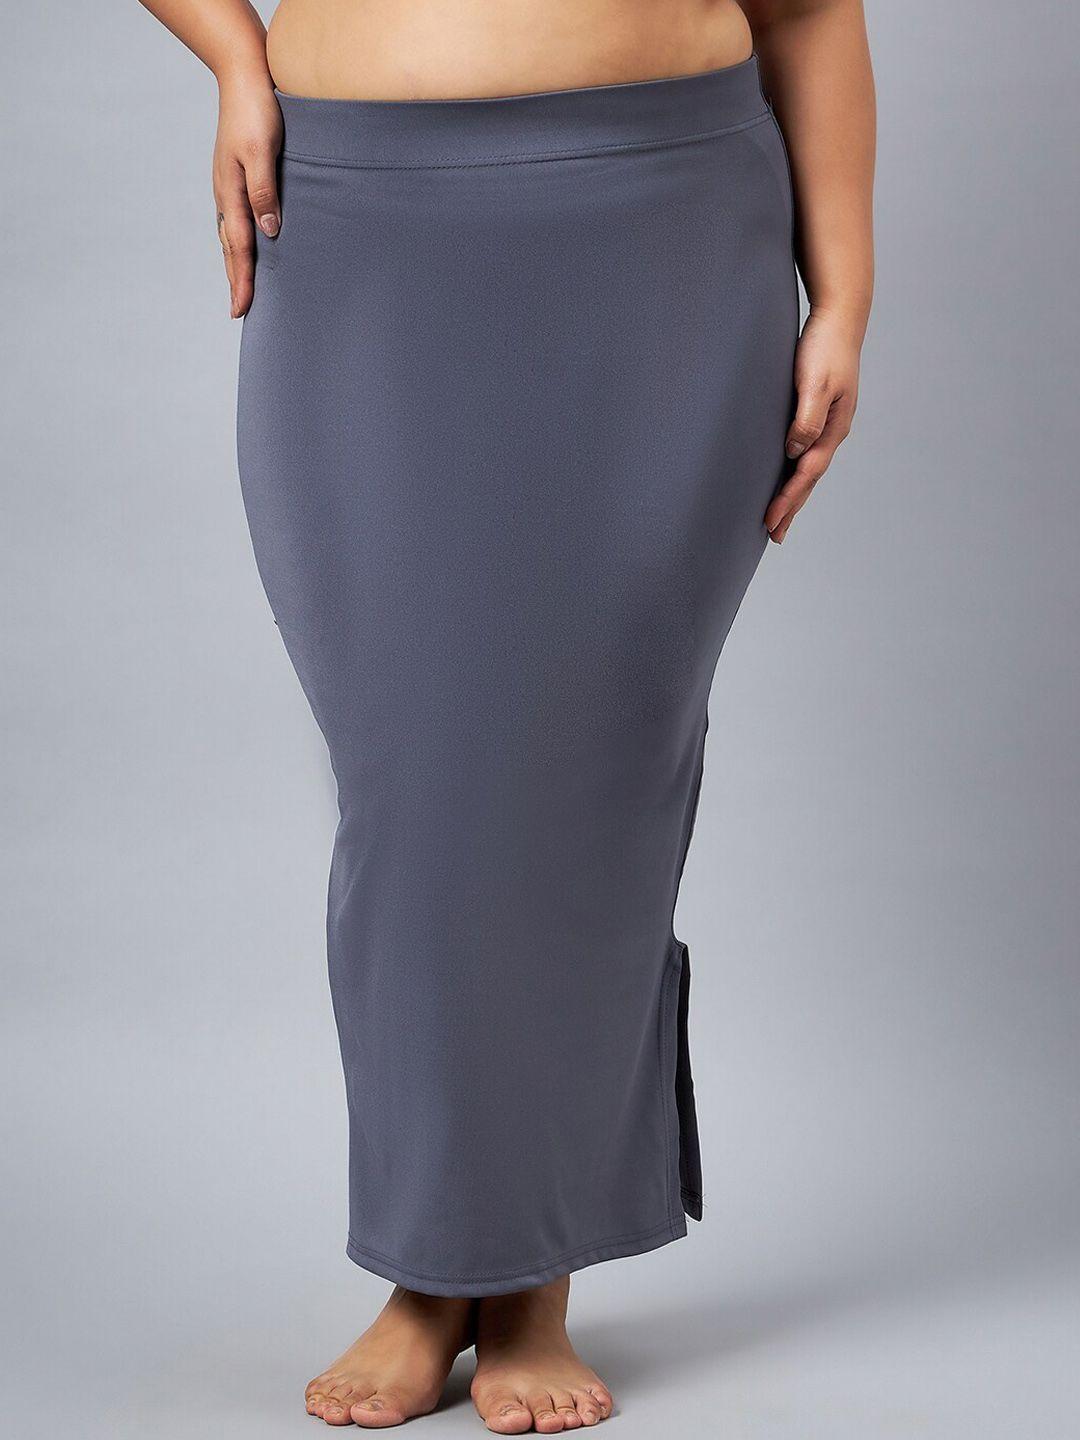 curves by zerokaata plus size seamless saree shapewear